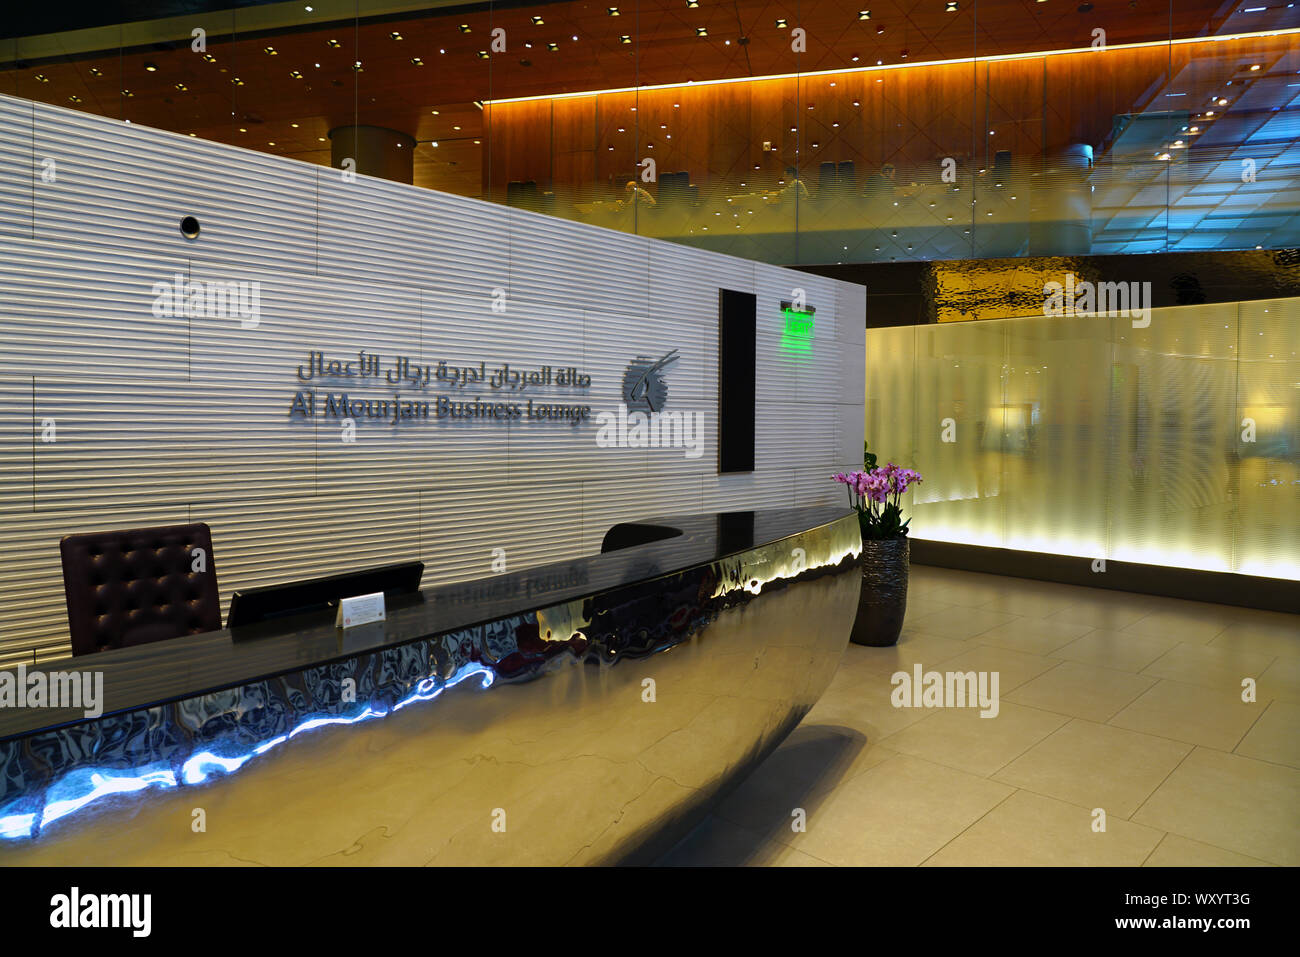 DOHA, QATAR - 17 JUN 2019- Vue de l'Al Mourjan Business Lounge à l'Aéroport International Hamad (DOH) à Doha. C'est le moyeu pour transporteur national Banque D'Images